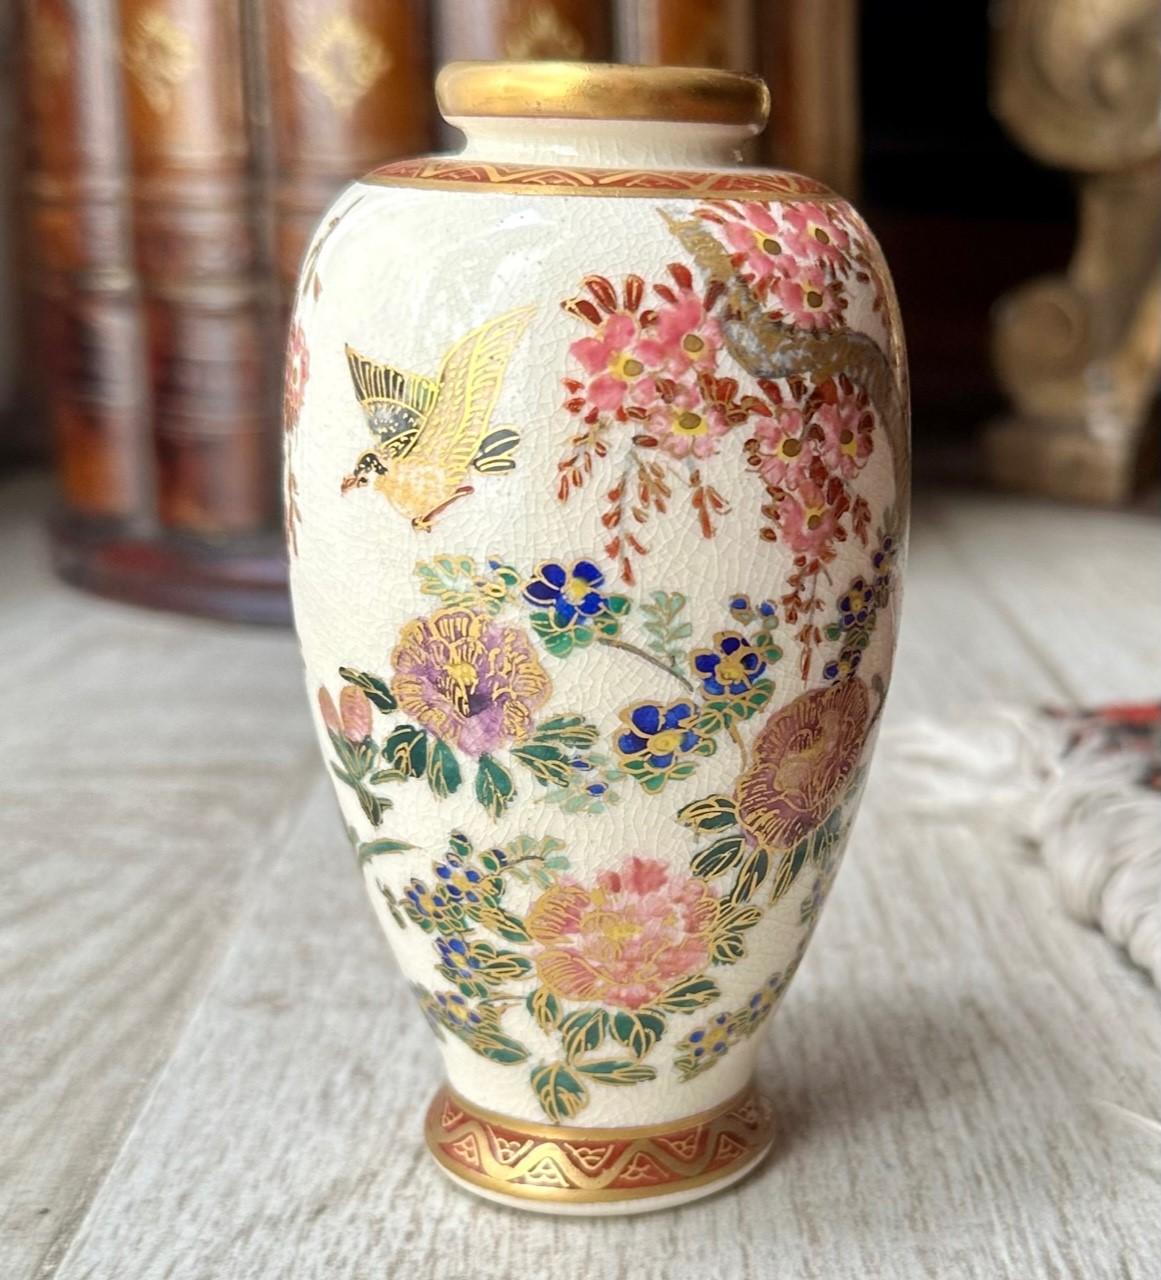 Petit vase balustre Satsuma de la période Meiji.

Ce vase japonais Satsuma de la fin de la période Meiji est peint à la main et décoré en dorure d'un paysage japonais aux détails exquis. La scène dans la nature est luxuriante avec des branches de